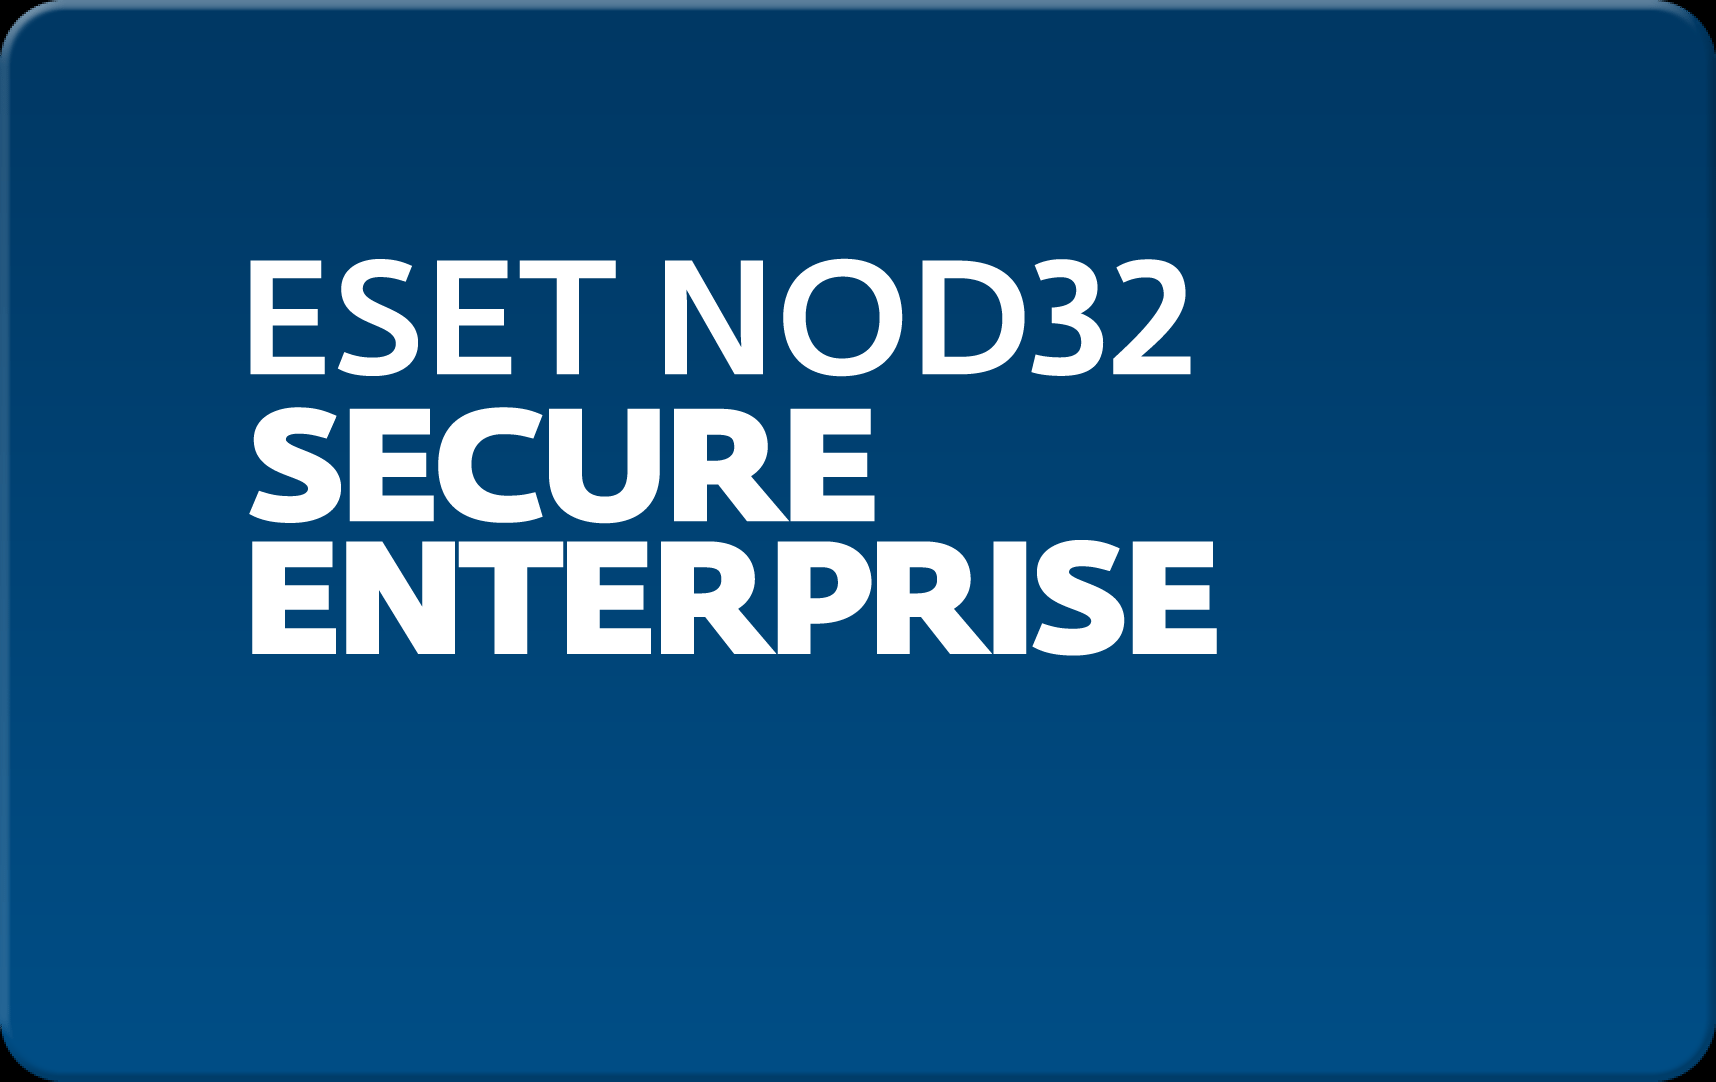        Eset NOD32 Secure Enterprise  52  NOD32-ESE-NS-1-52  #1